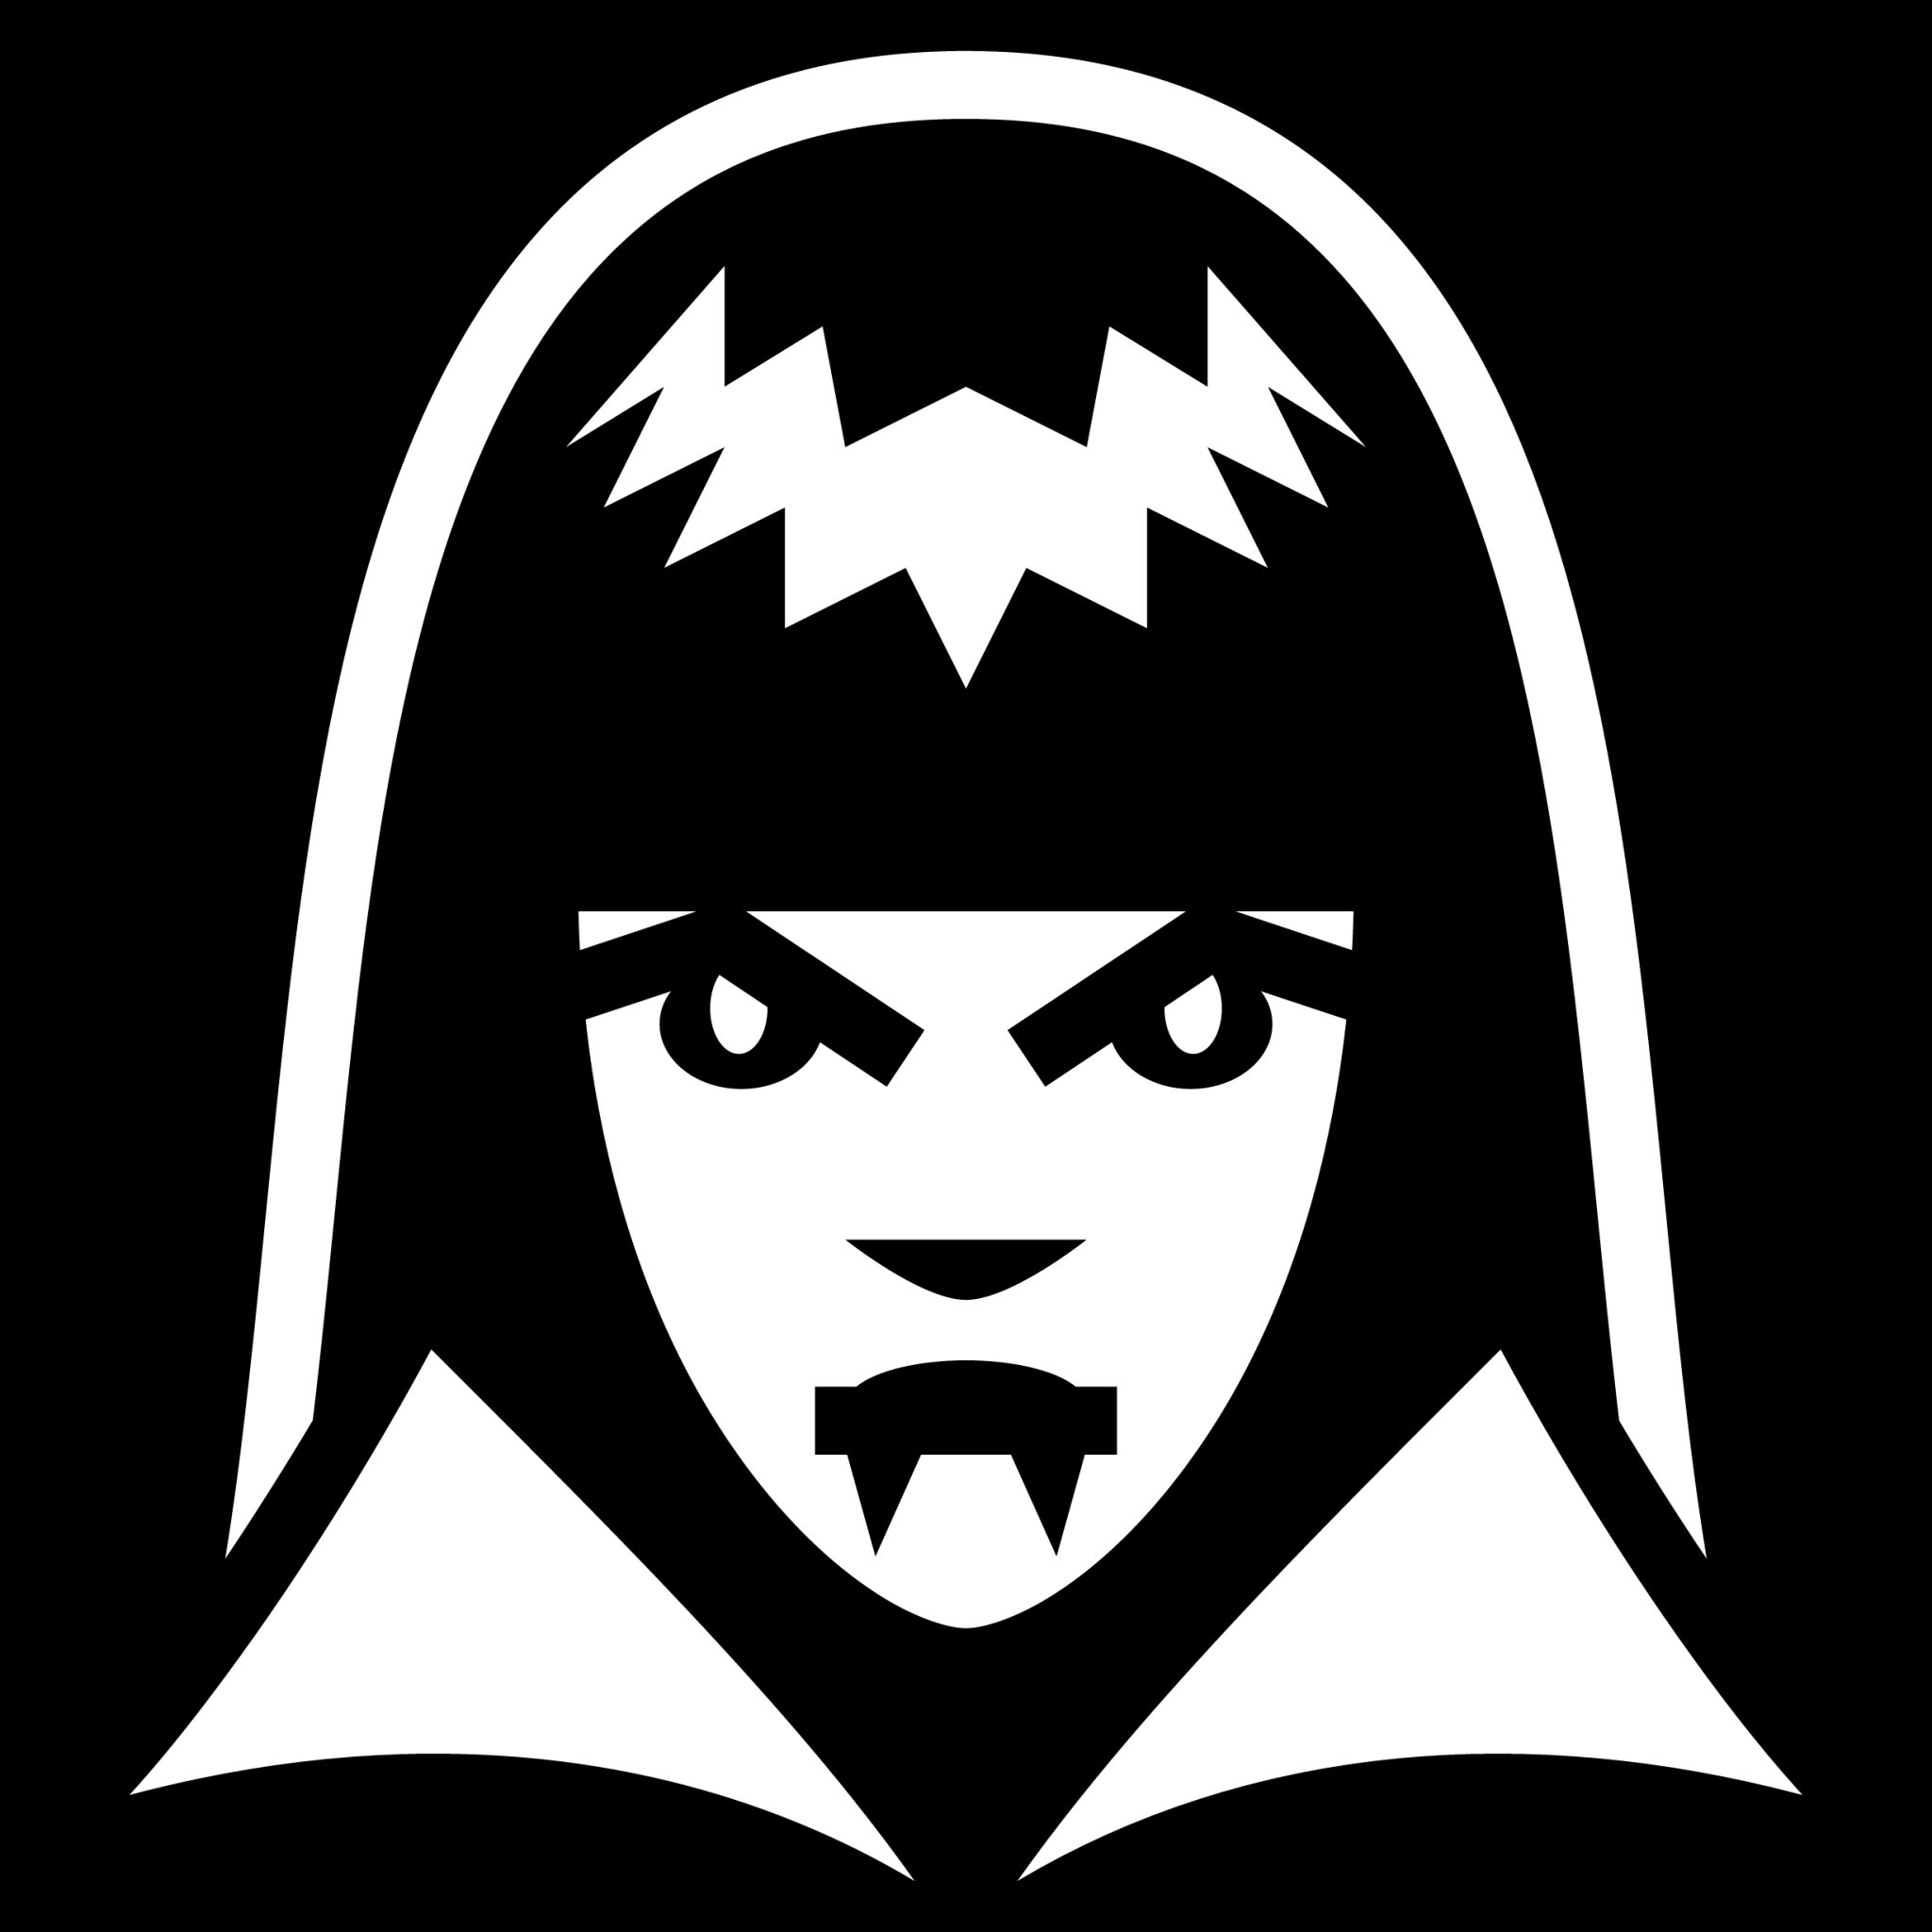 female vampire icon